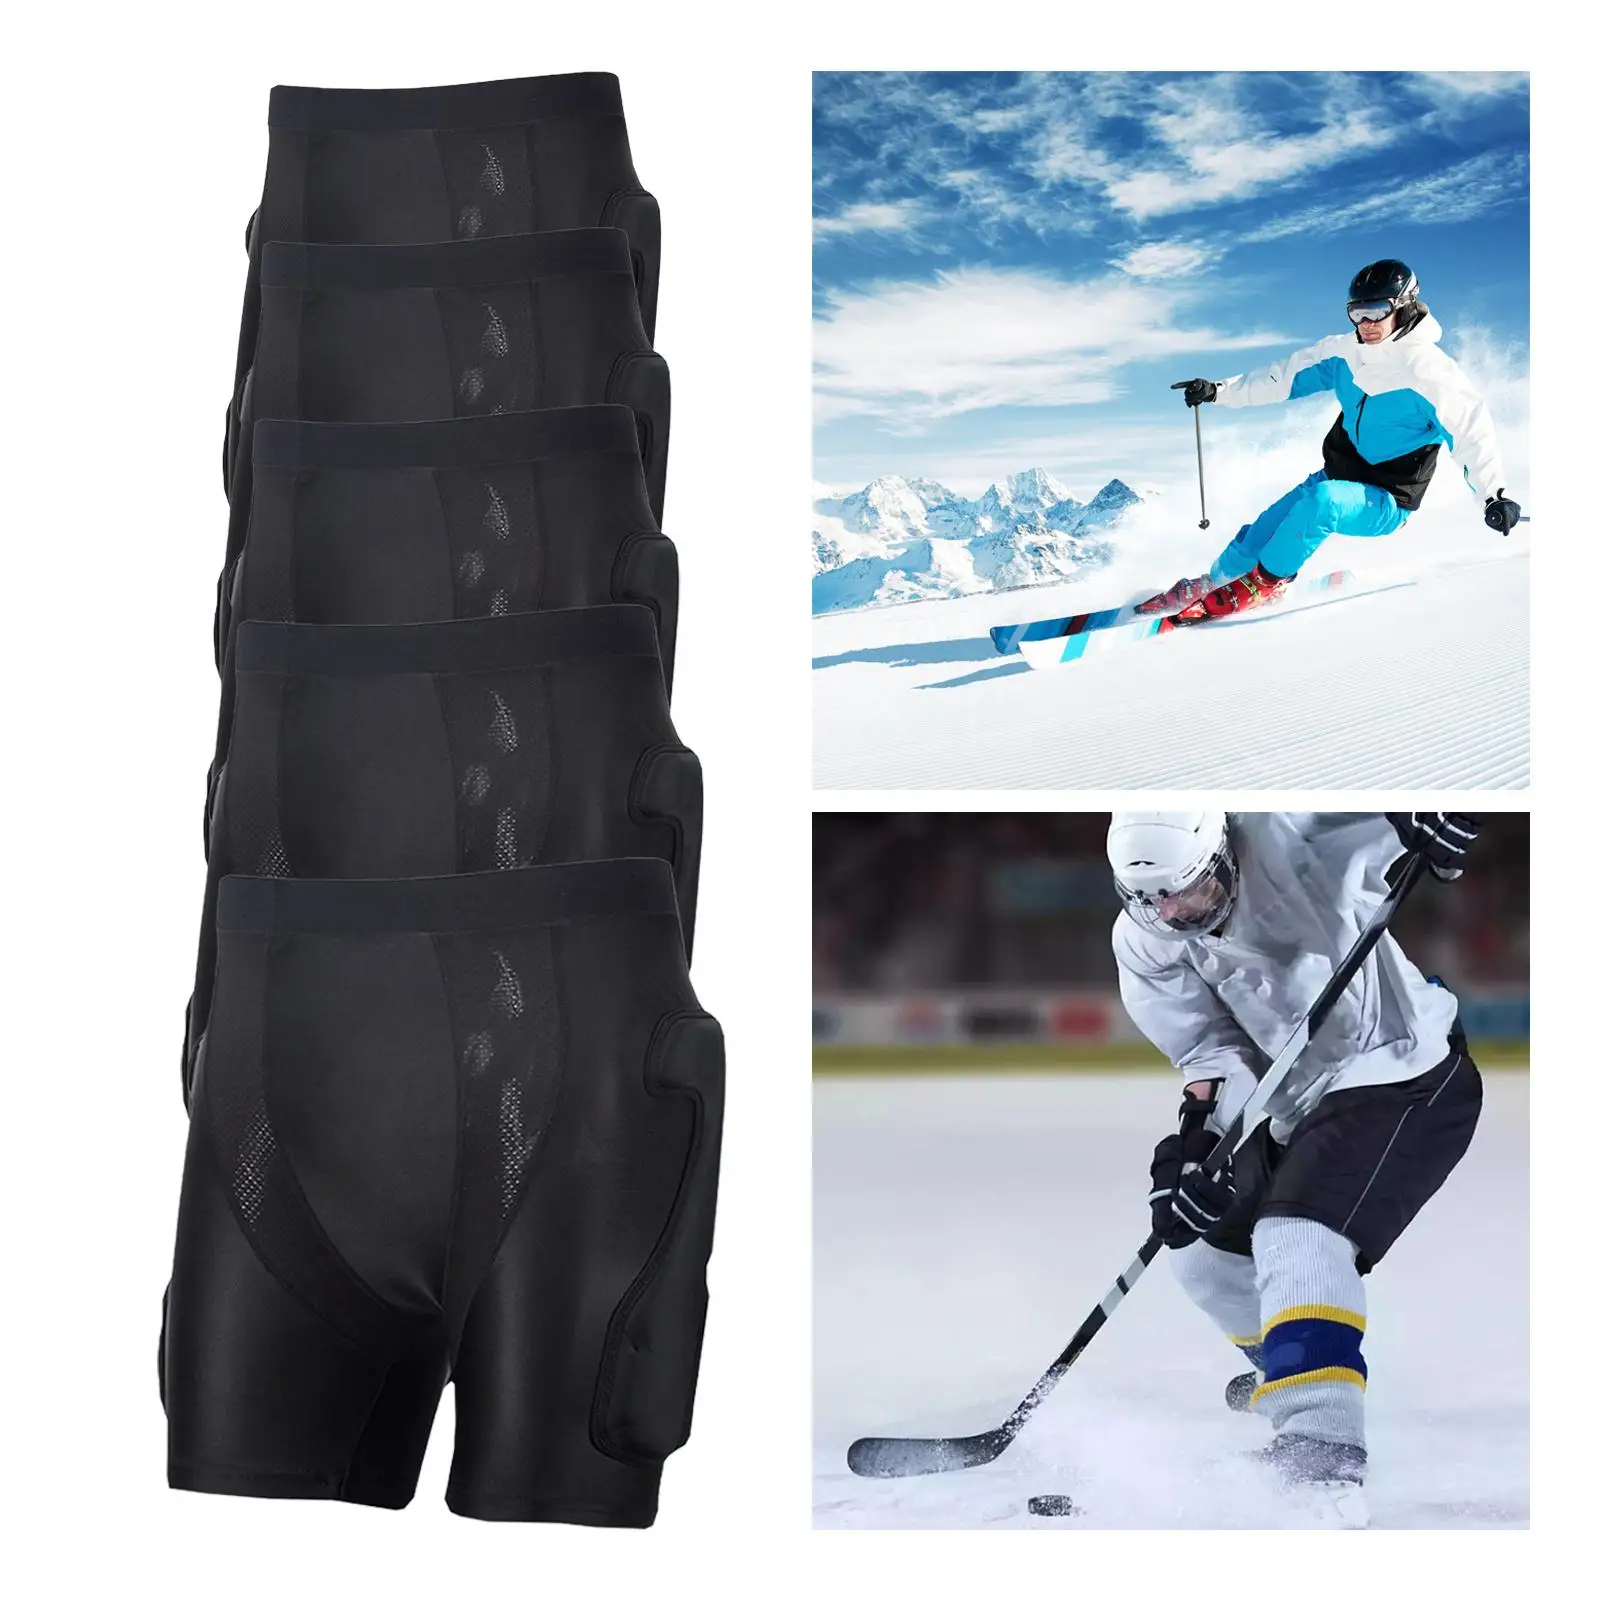 Protective Padded Shorts Skating Ski Hip Pad Tailbone Protection Pants Protector for Riding Ski Snowboarding Skating Women Men